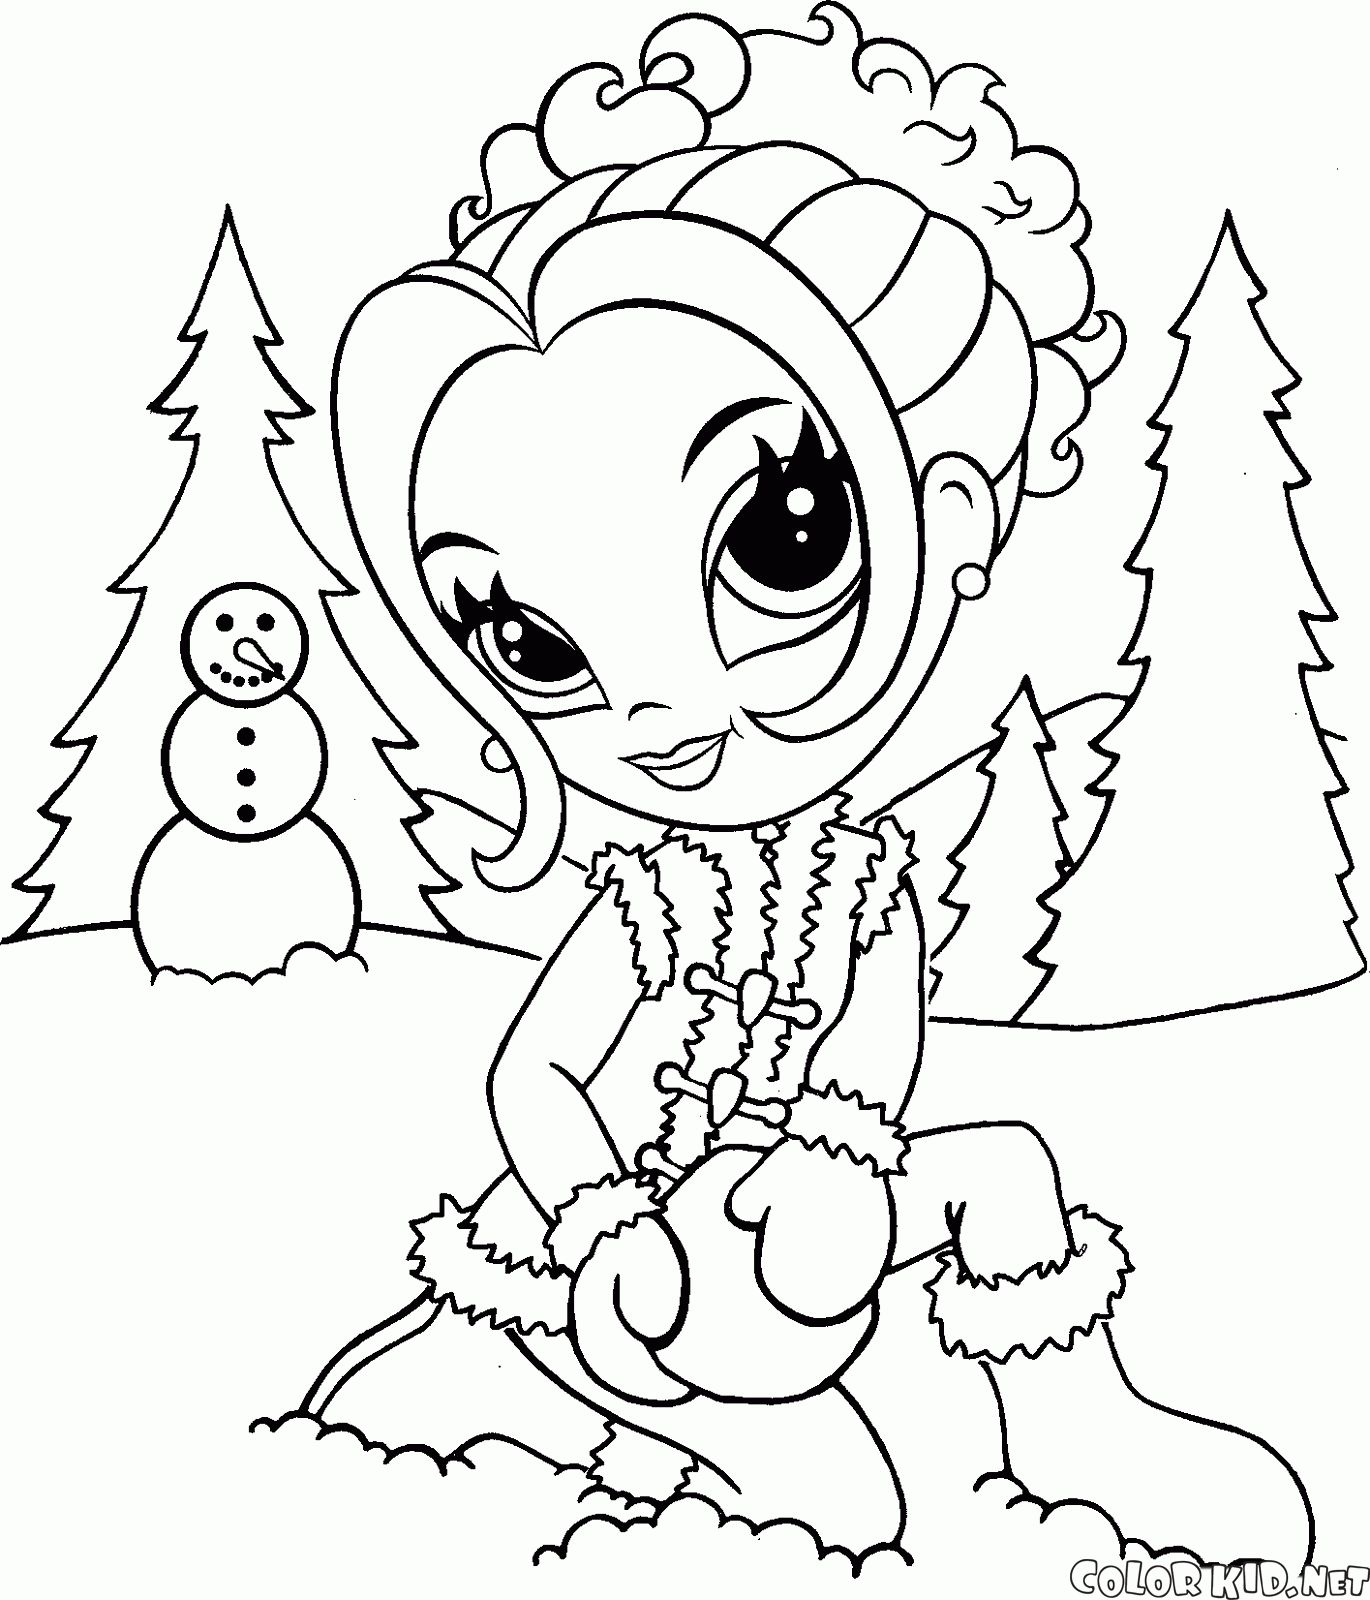 Chica esculpe muñeco de nieve